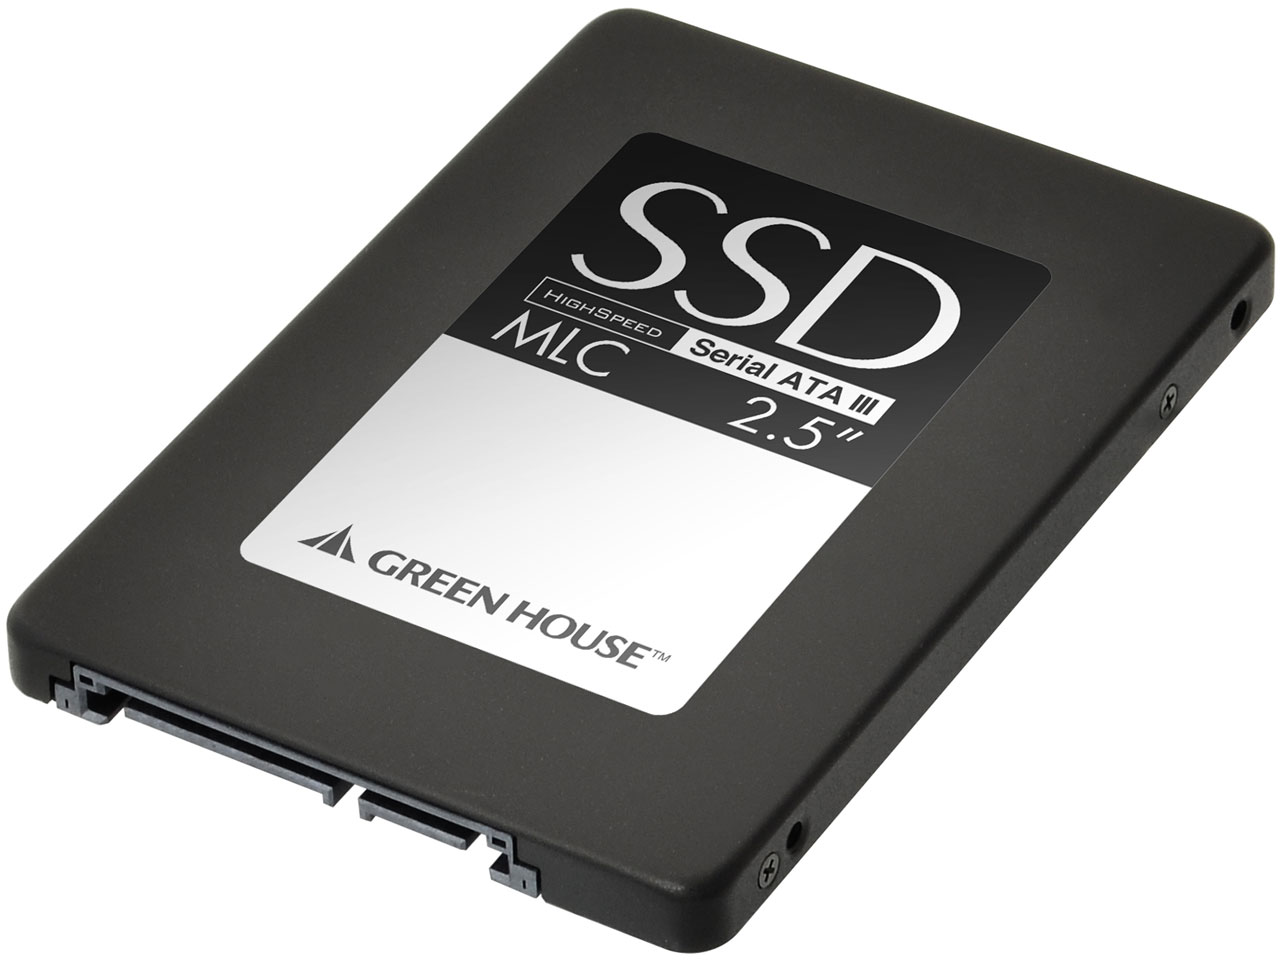 GH-SSD32E120